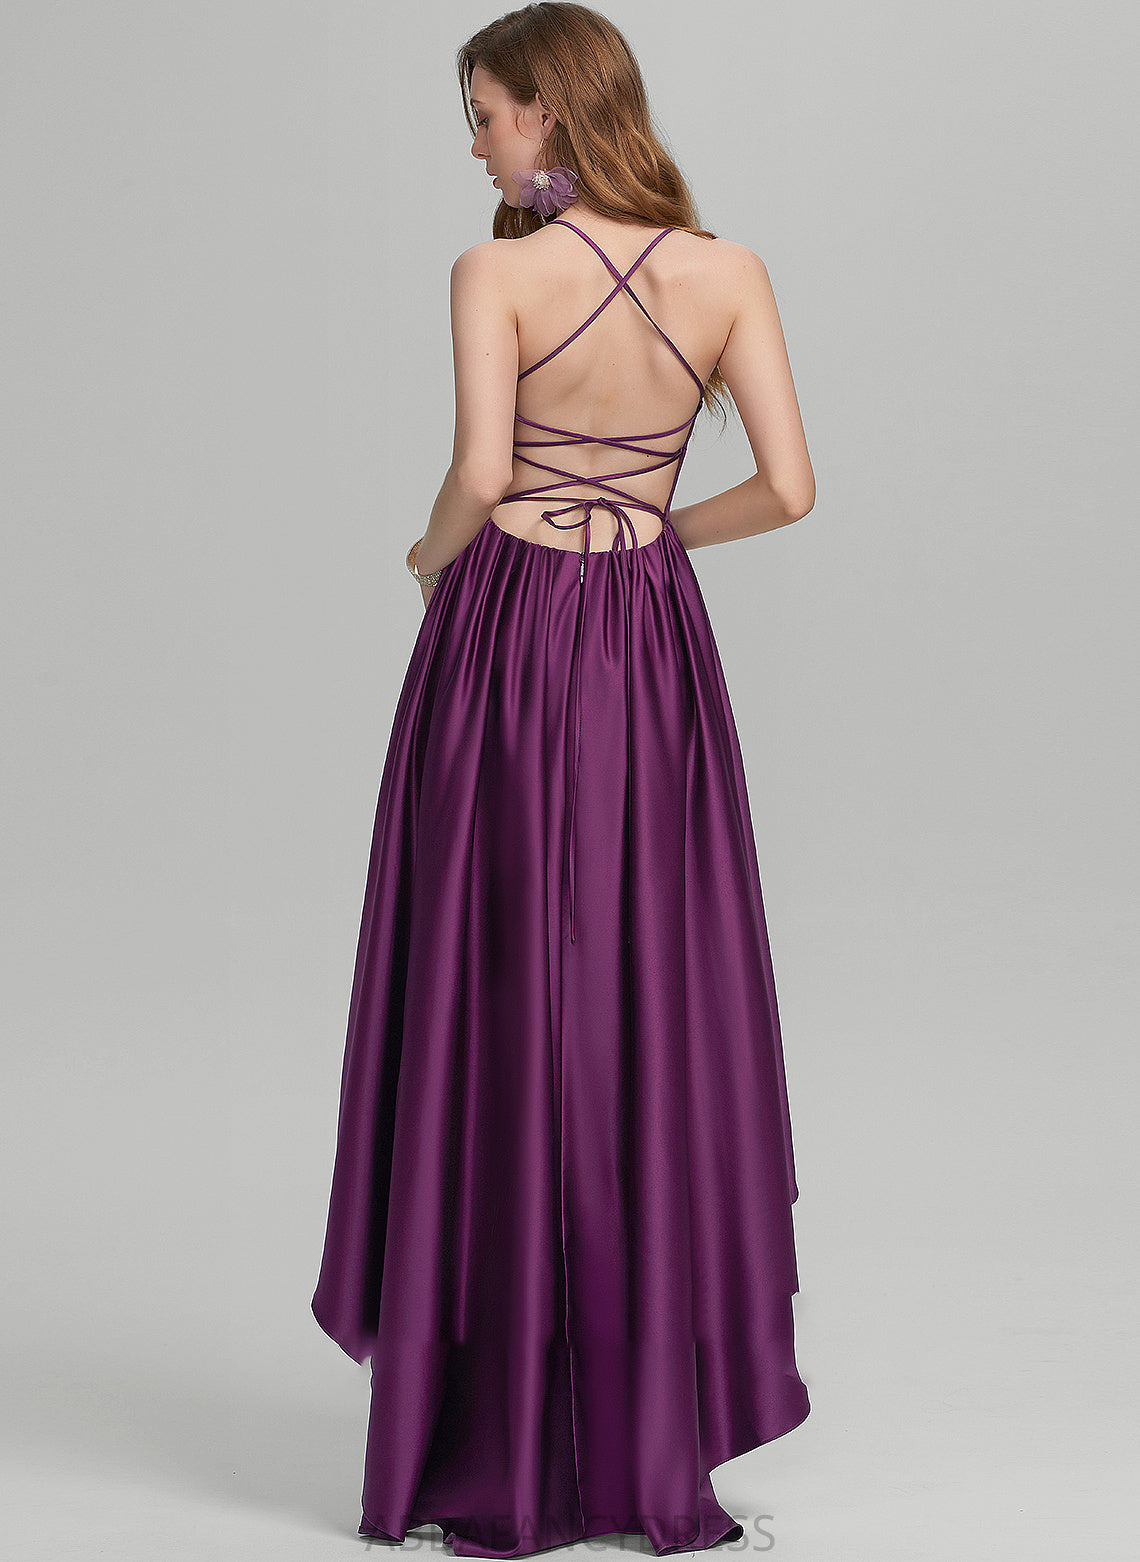 Square Sarah Satin Ball-Gown/Princess Asymmetrical Prom Dresses Neckline